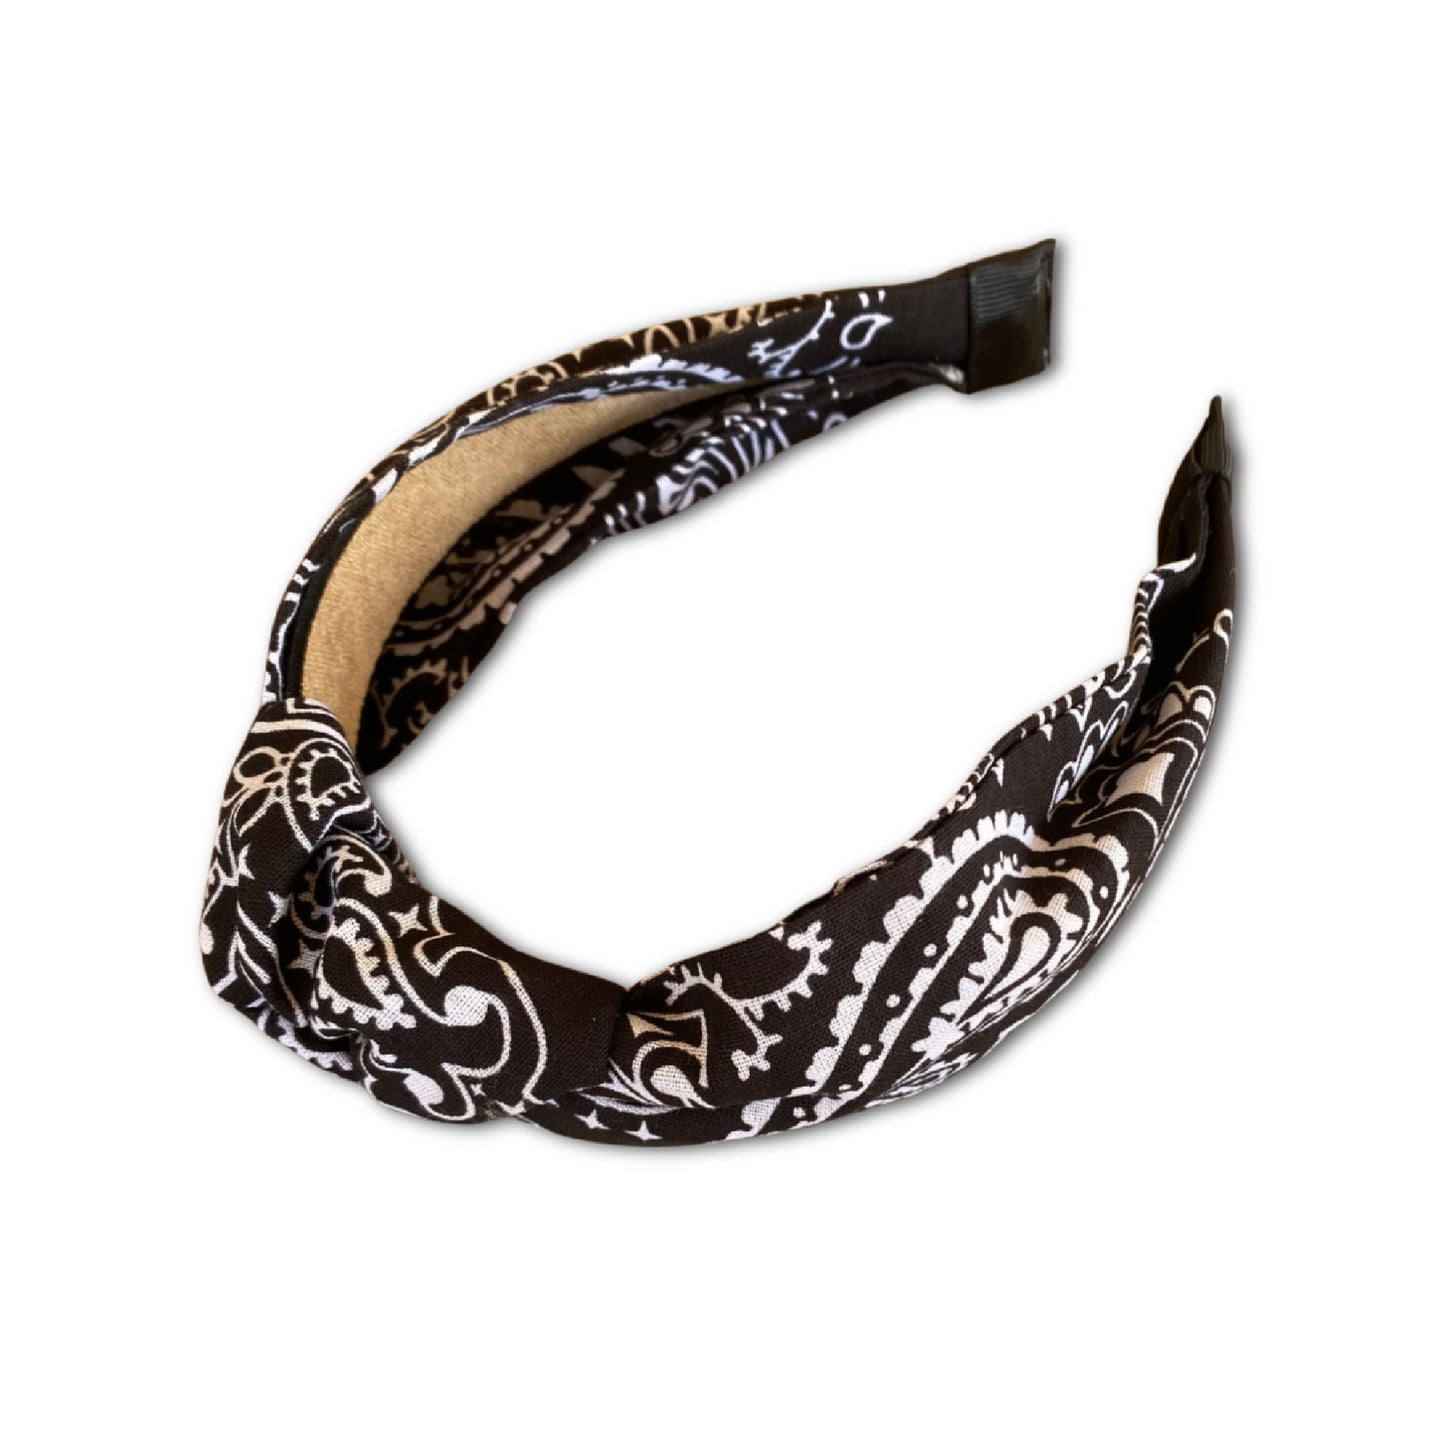 Top Knot Paisley Bandana Headband (Multiple Colors)